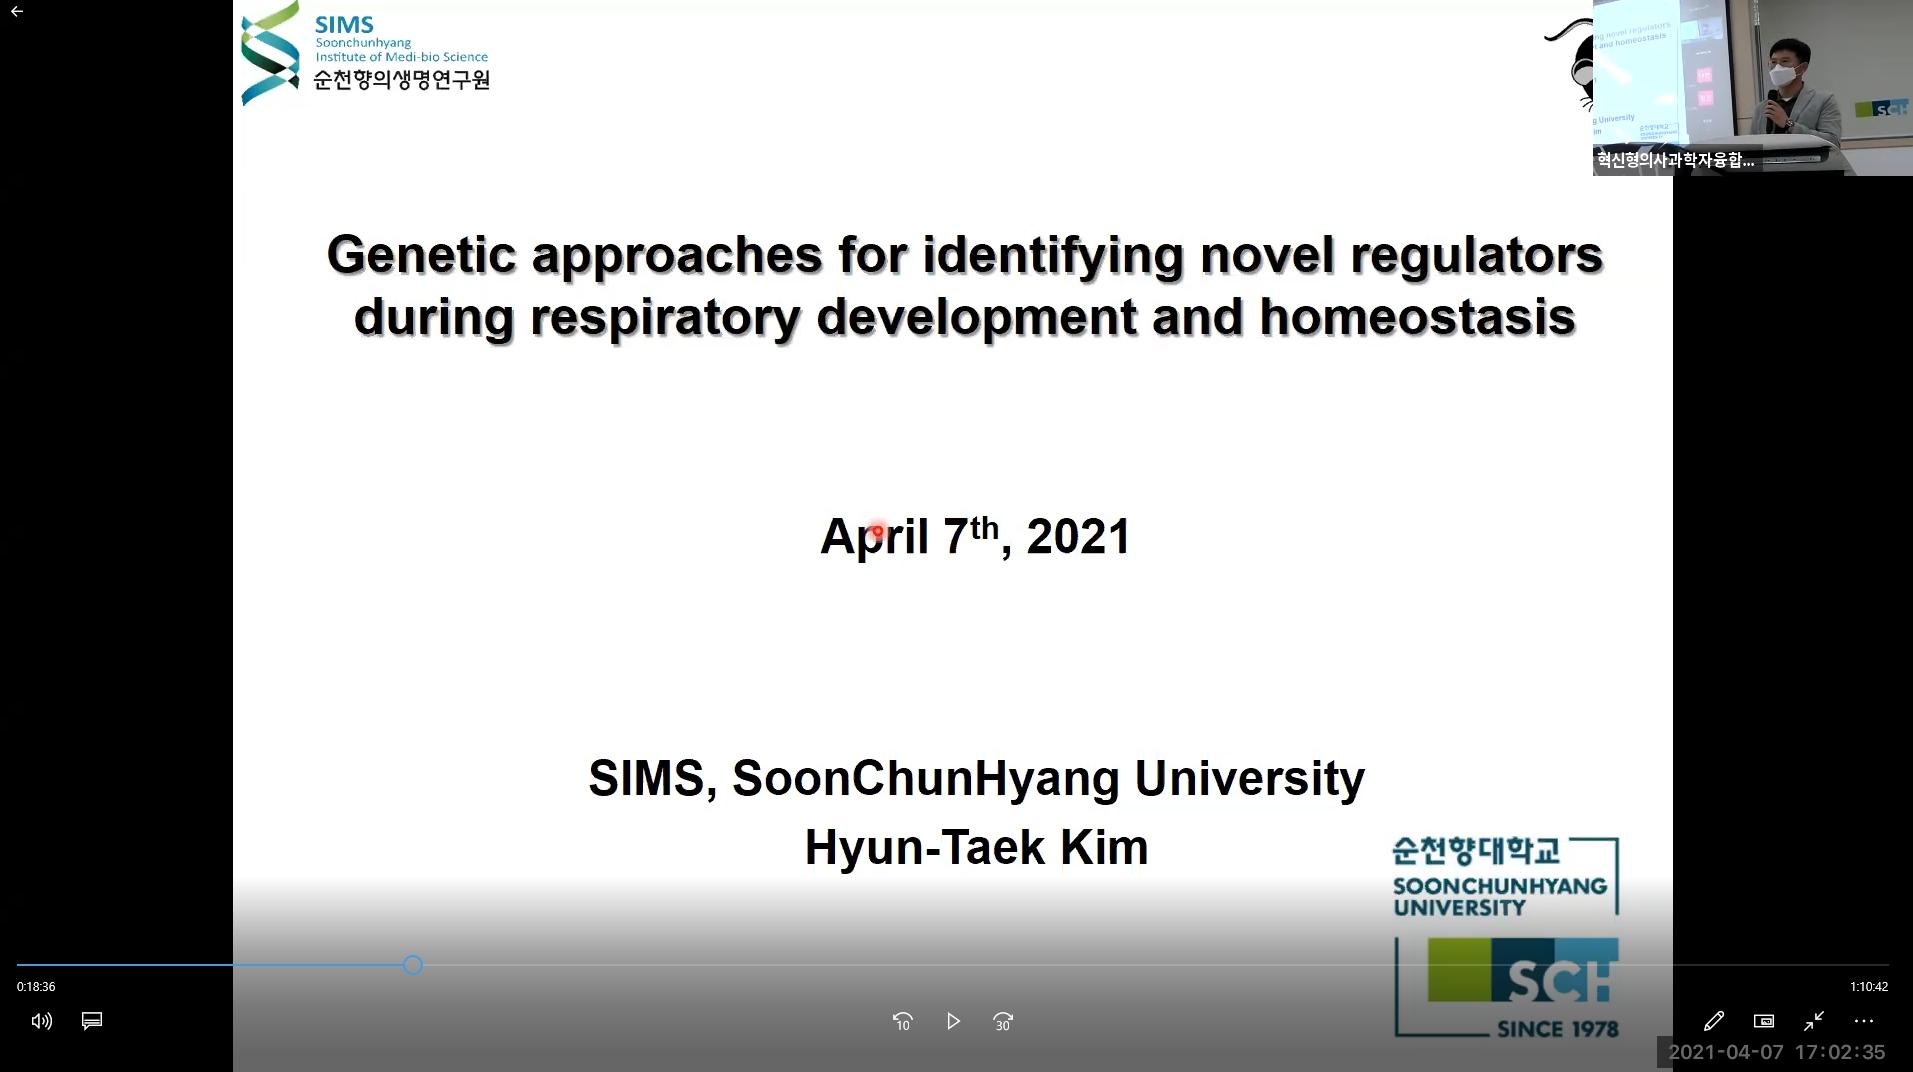 (교육)김현택 교수님 Genetic approaches for identifying novel regulators during respiratory development and homeostasis 강의 이미지